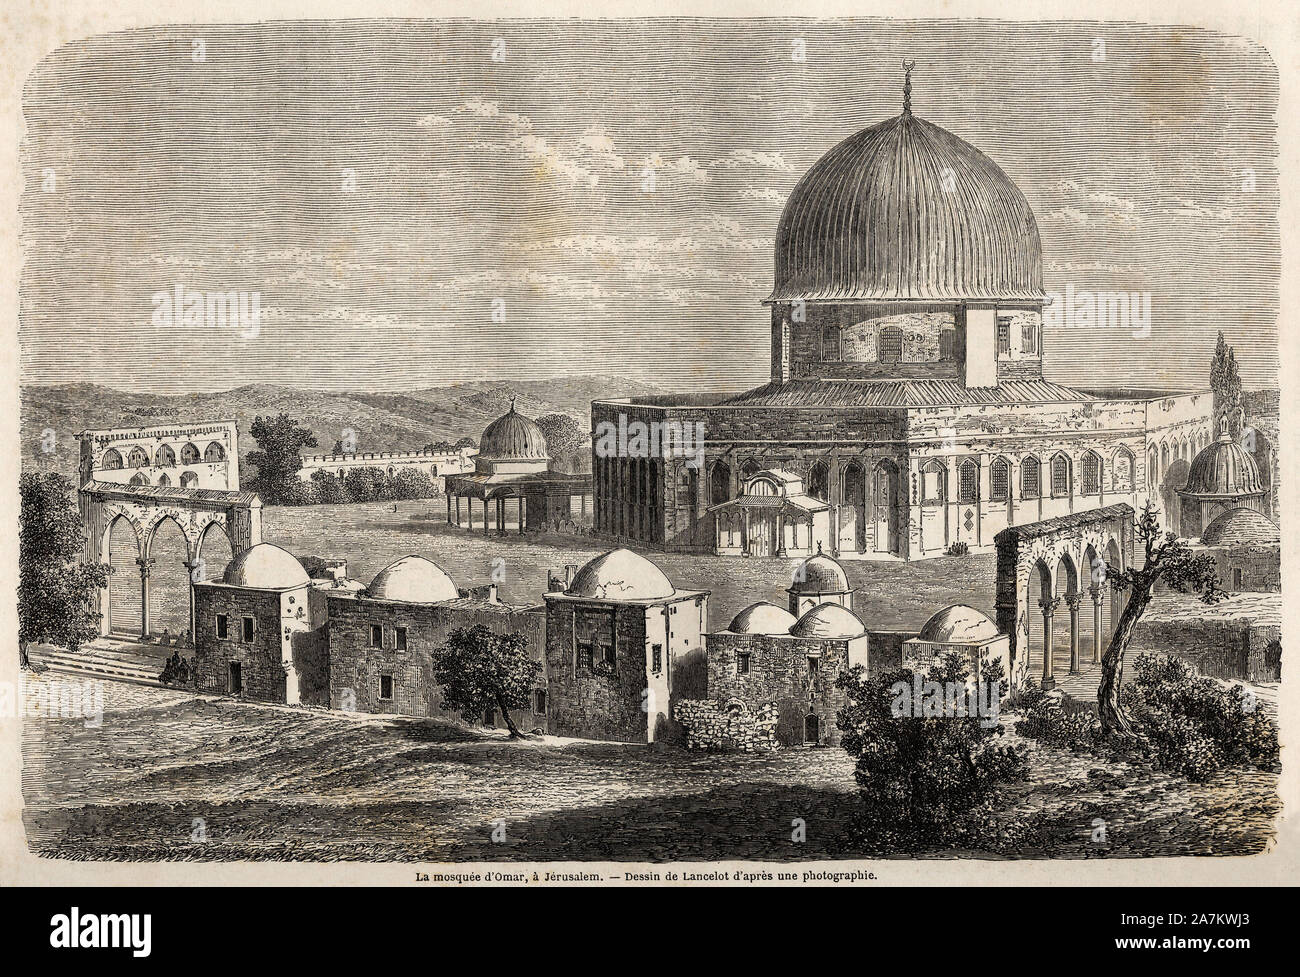 La mosquee d'Omar, edifiee en 691, a Jerusalem, dessin de Lancelot, pour illustrer le voyage en Palestine, en 1856, de M. Bida. Gravure in 'Le tour du Stock Photo